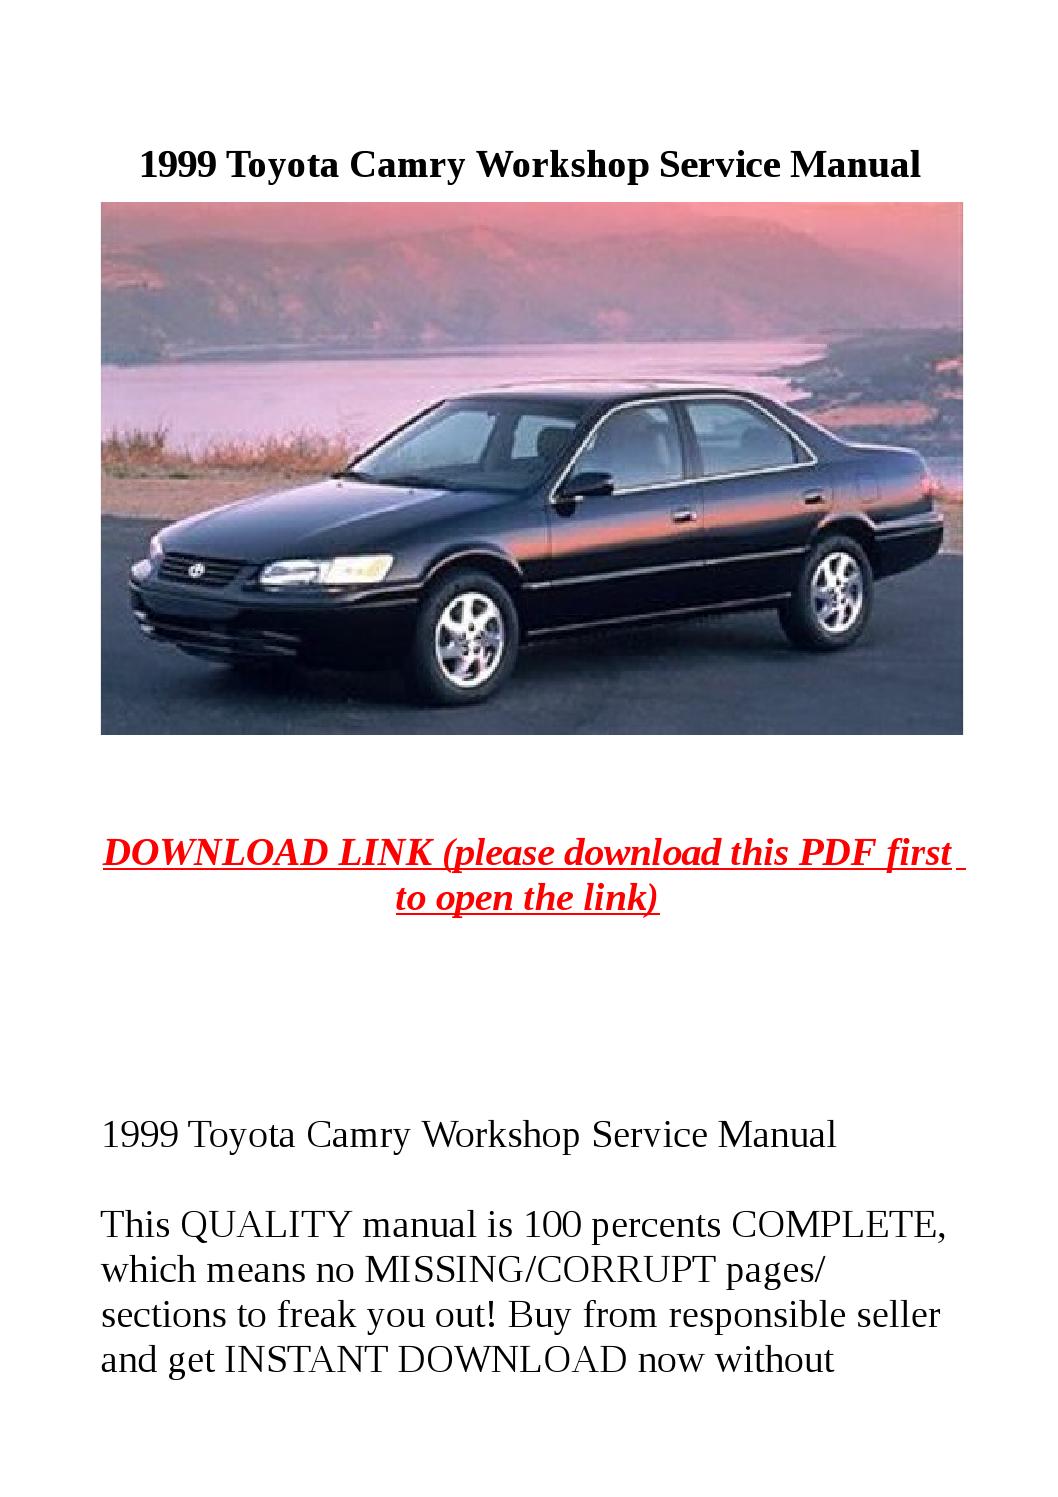 1999 Toyota Camry Repair Manual Download